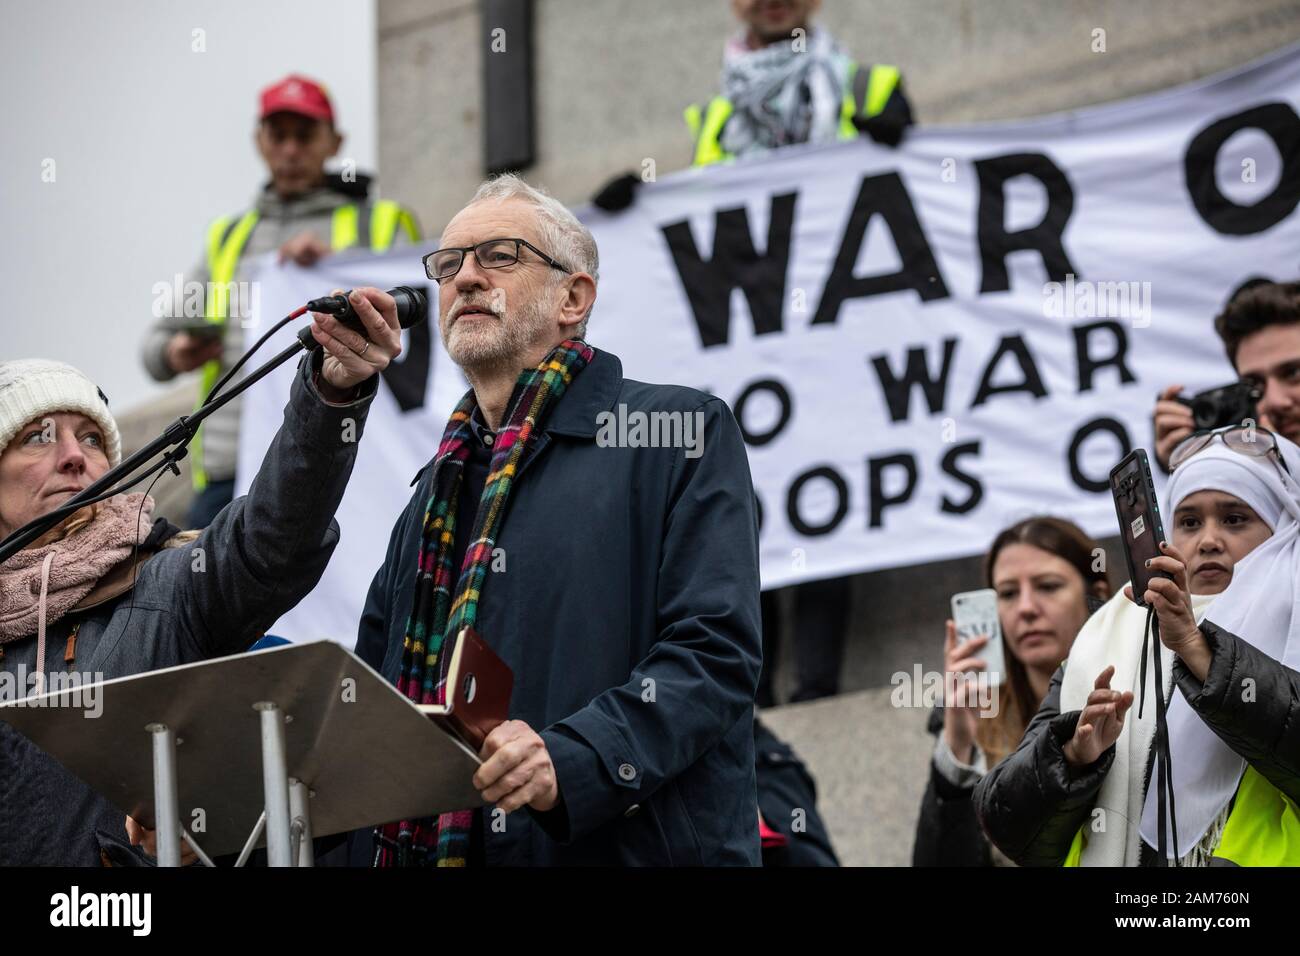 Protestation contre la « guerre sans guerre contre l'Iran » et discours de Jeremy Corbyn, chef du Parti travailliste, Trafalgar Square. Banque D'Images